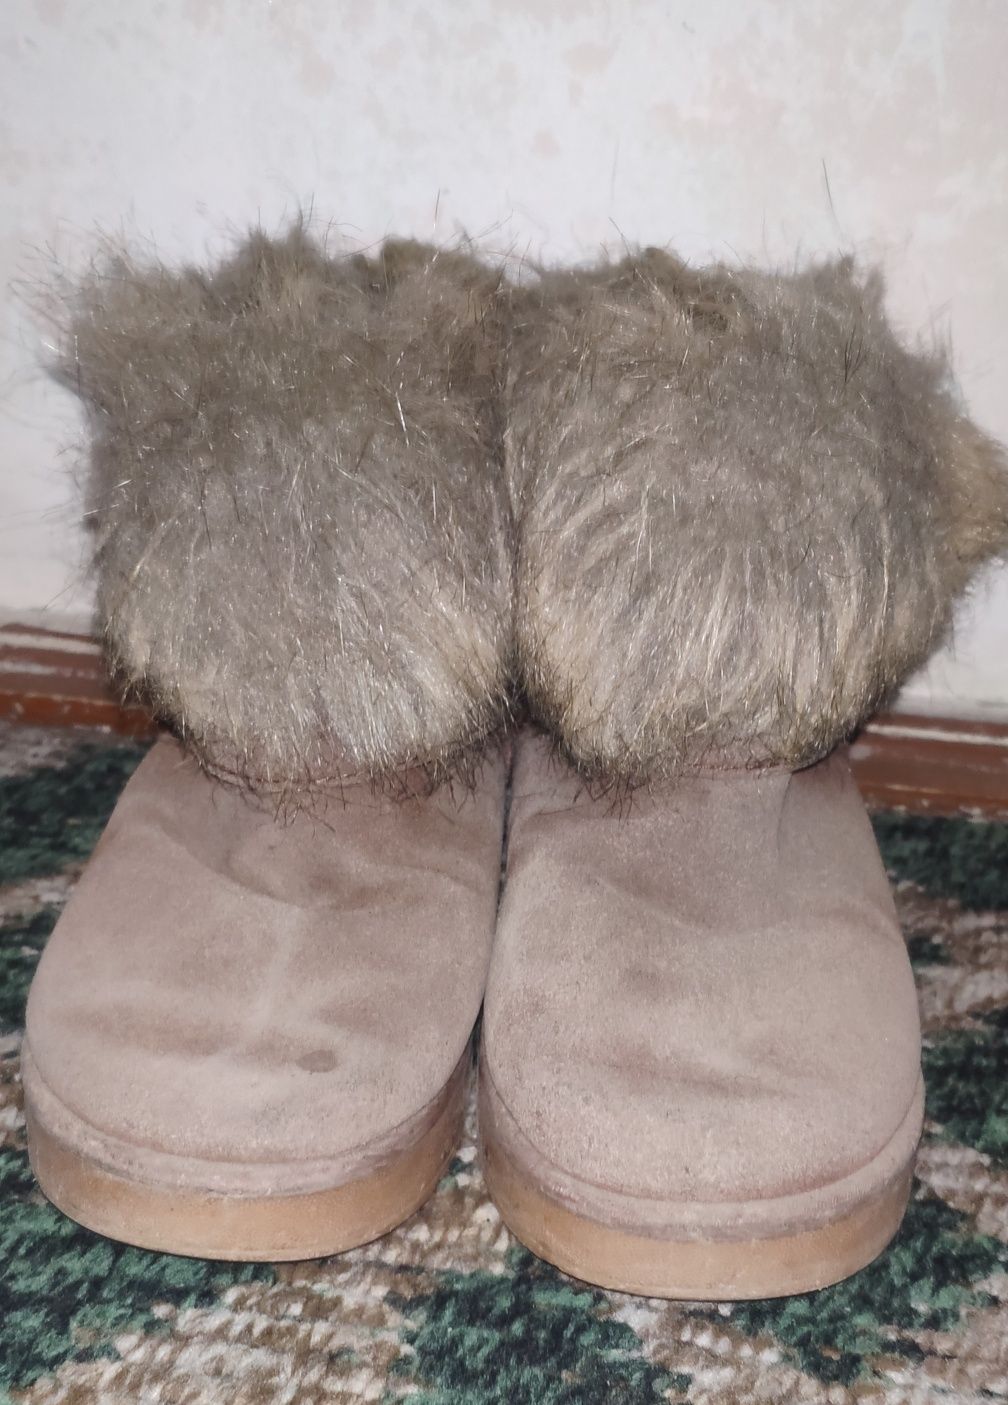 Зимние ботинки детские